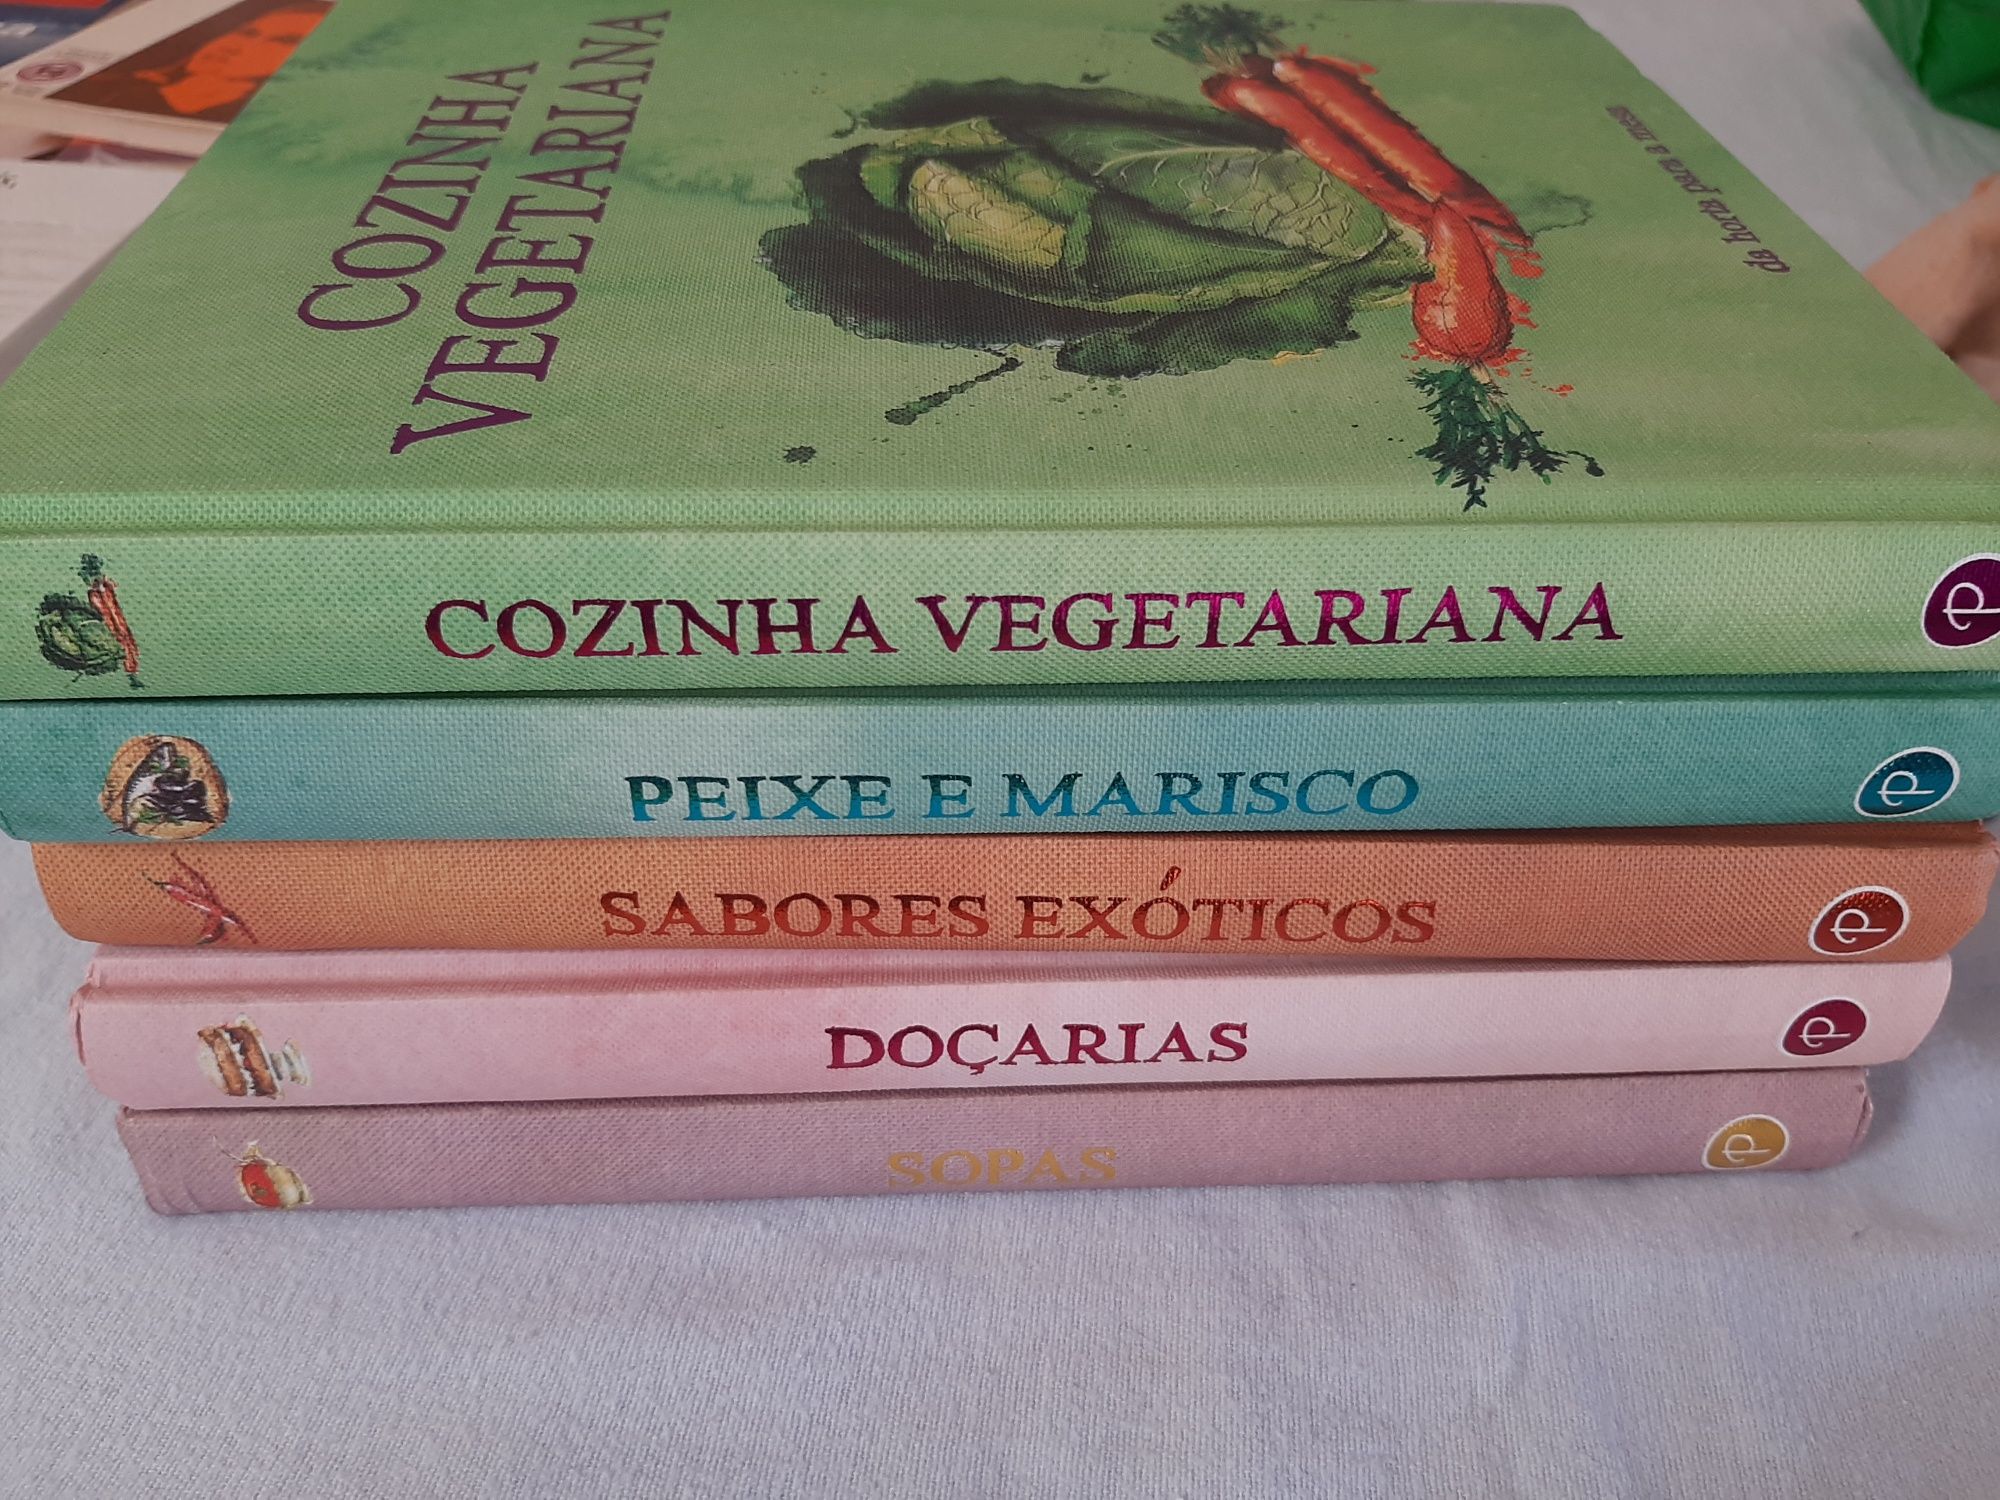 Vários livros de culinária